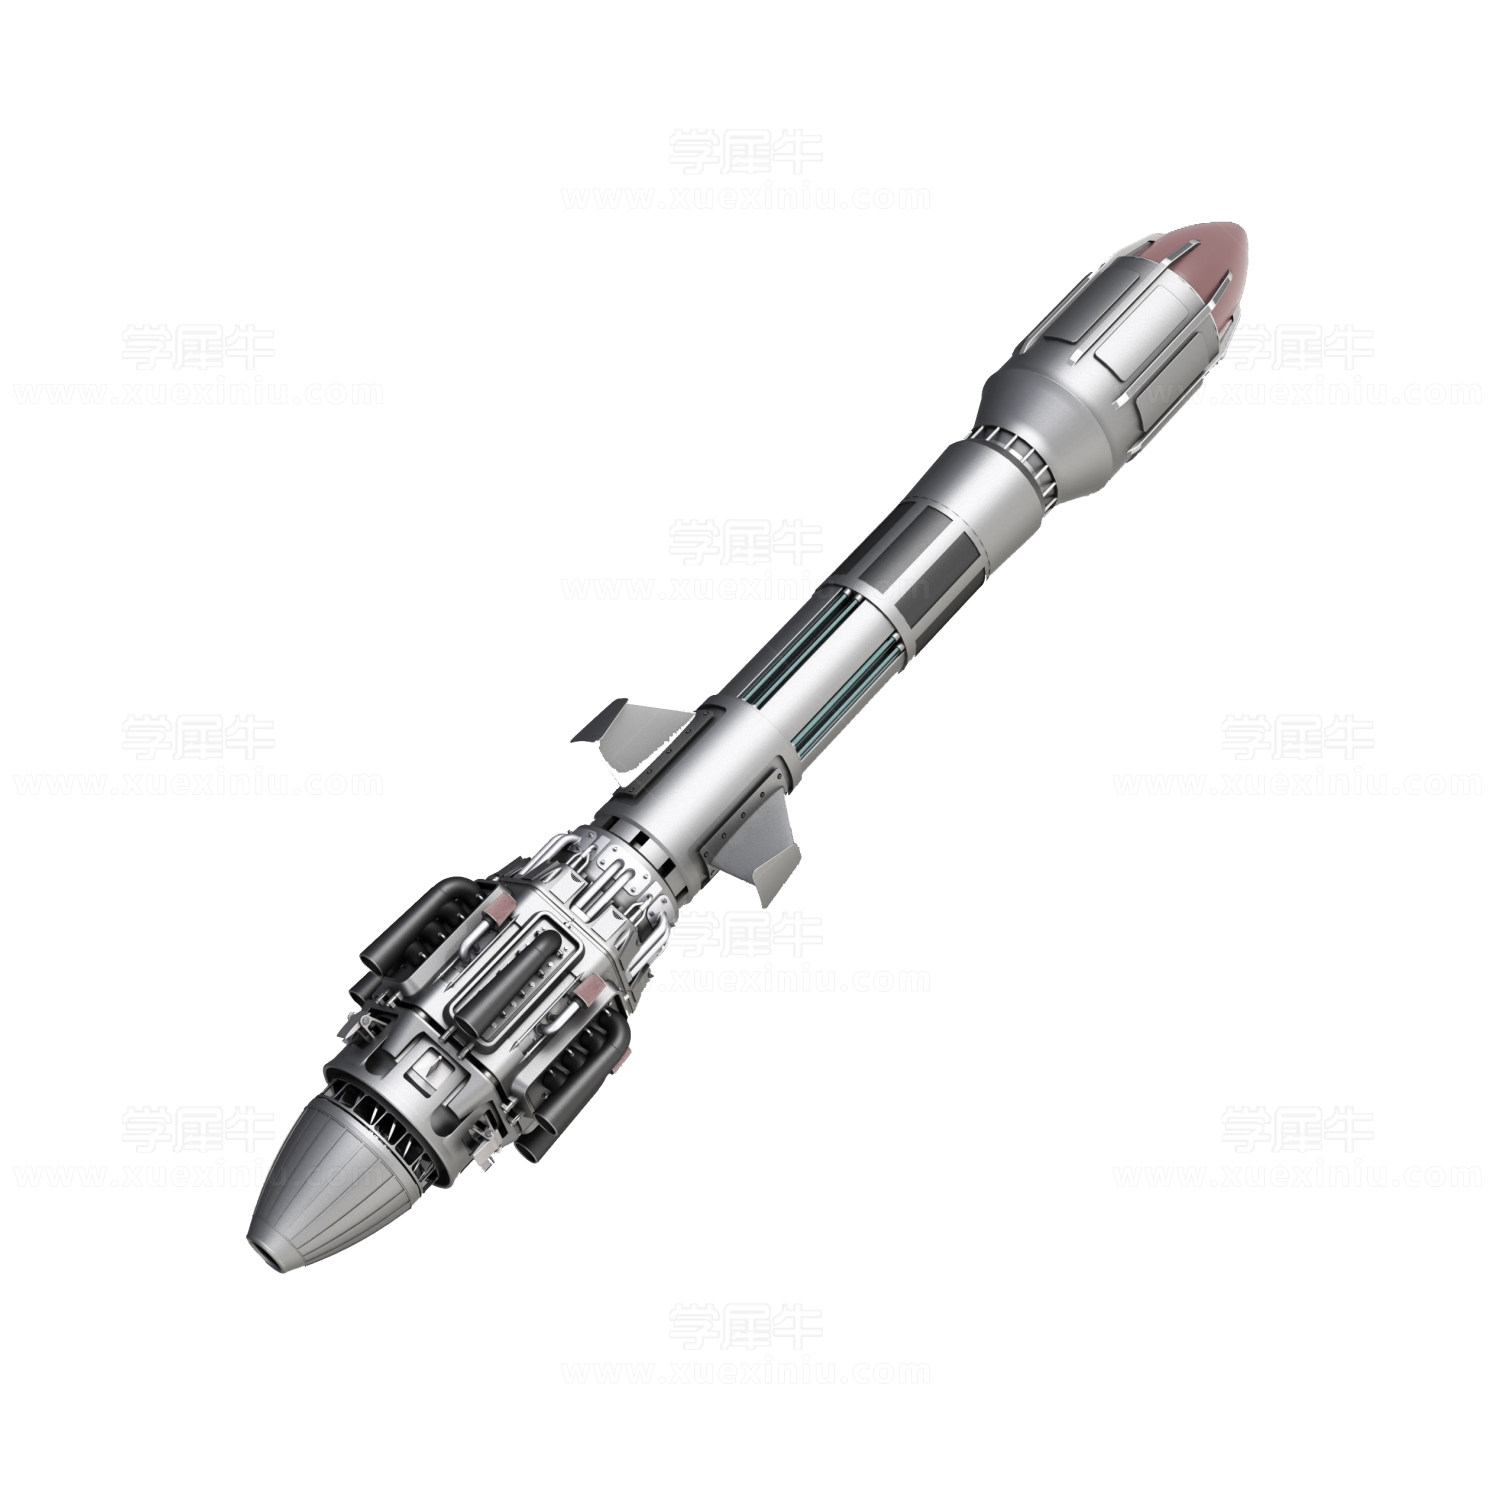 火箭模型_SolidWorks_玩具礼品_3D模型_图纸下载_微小网